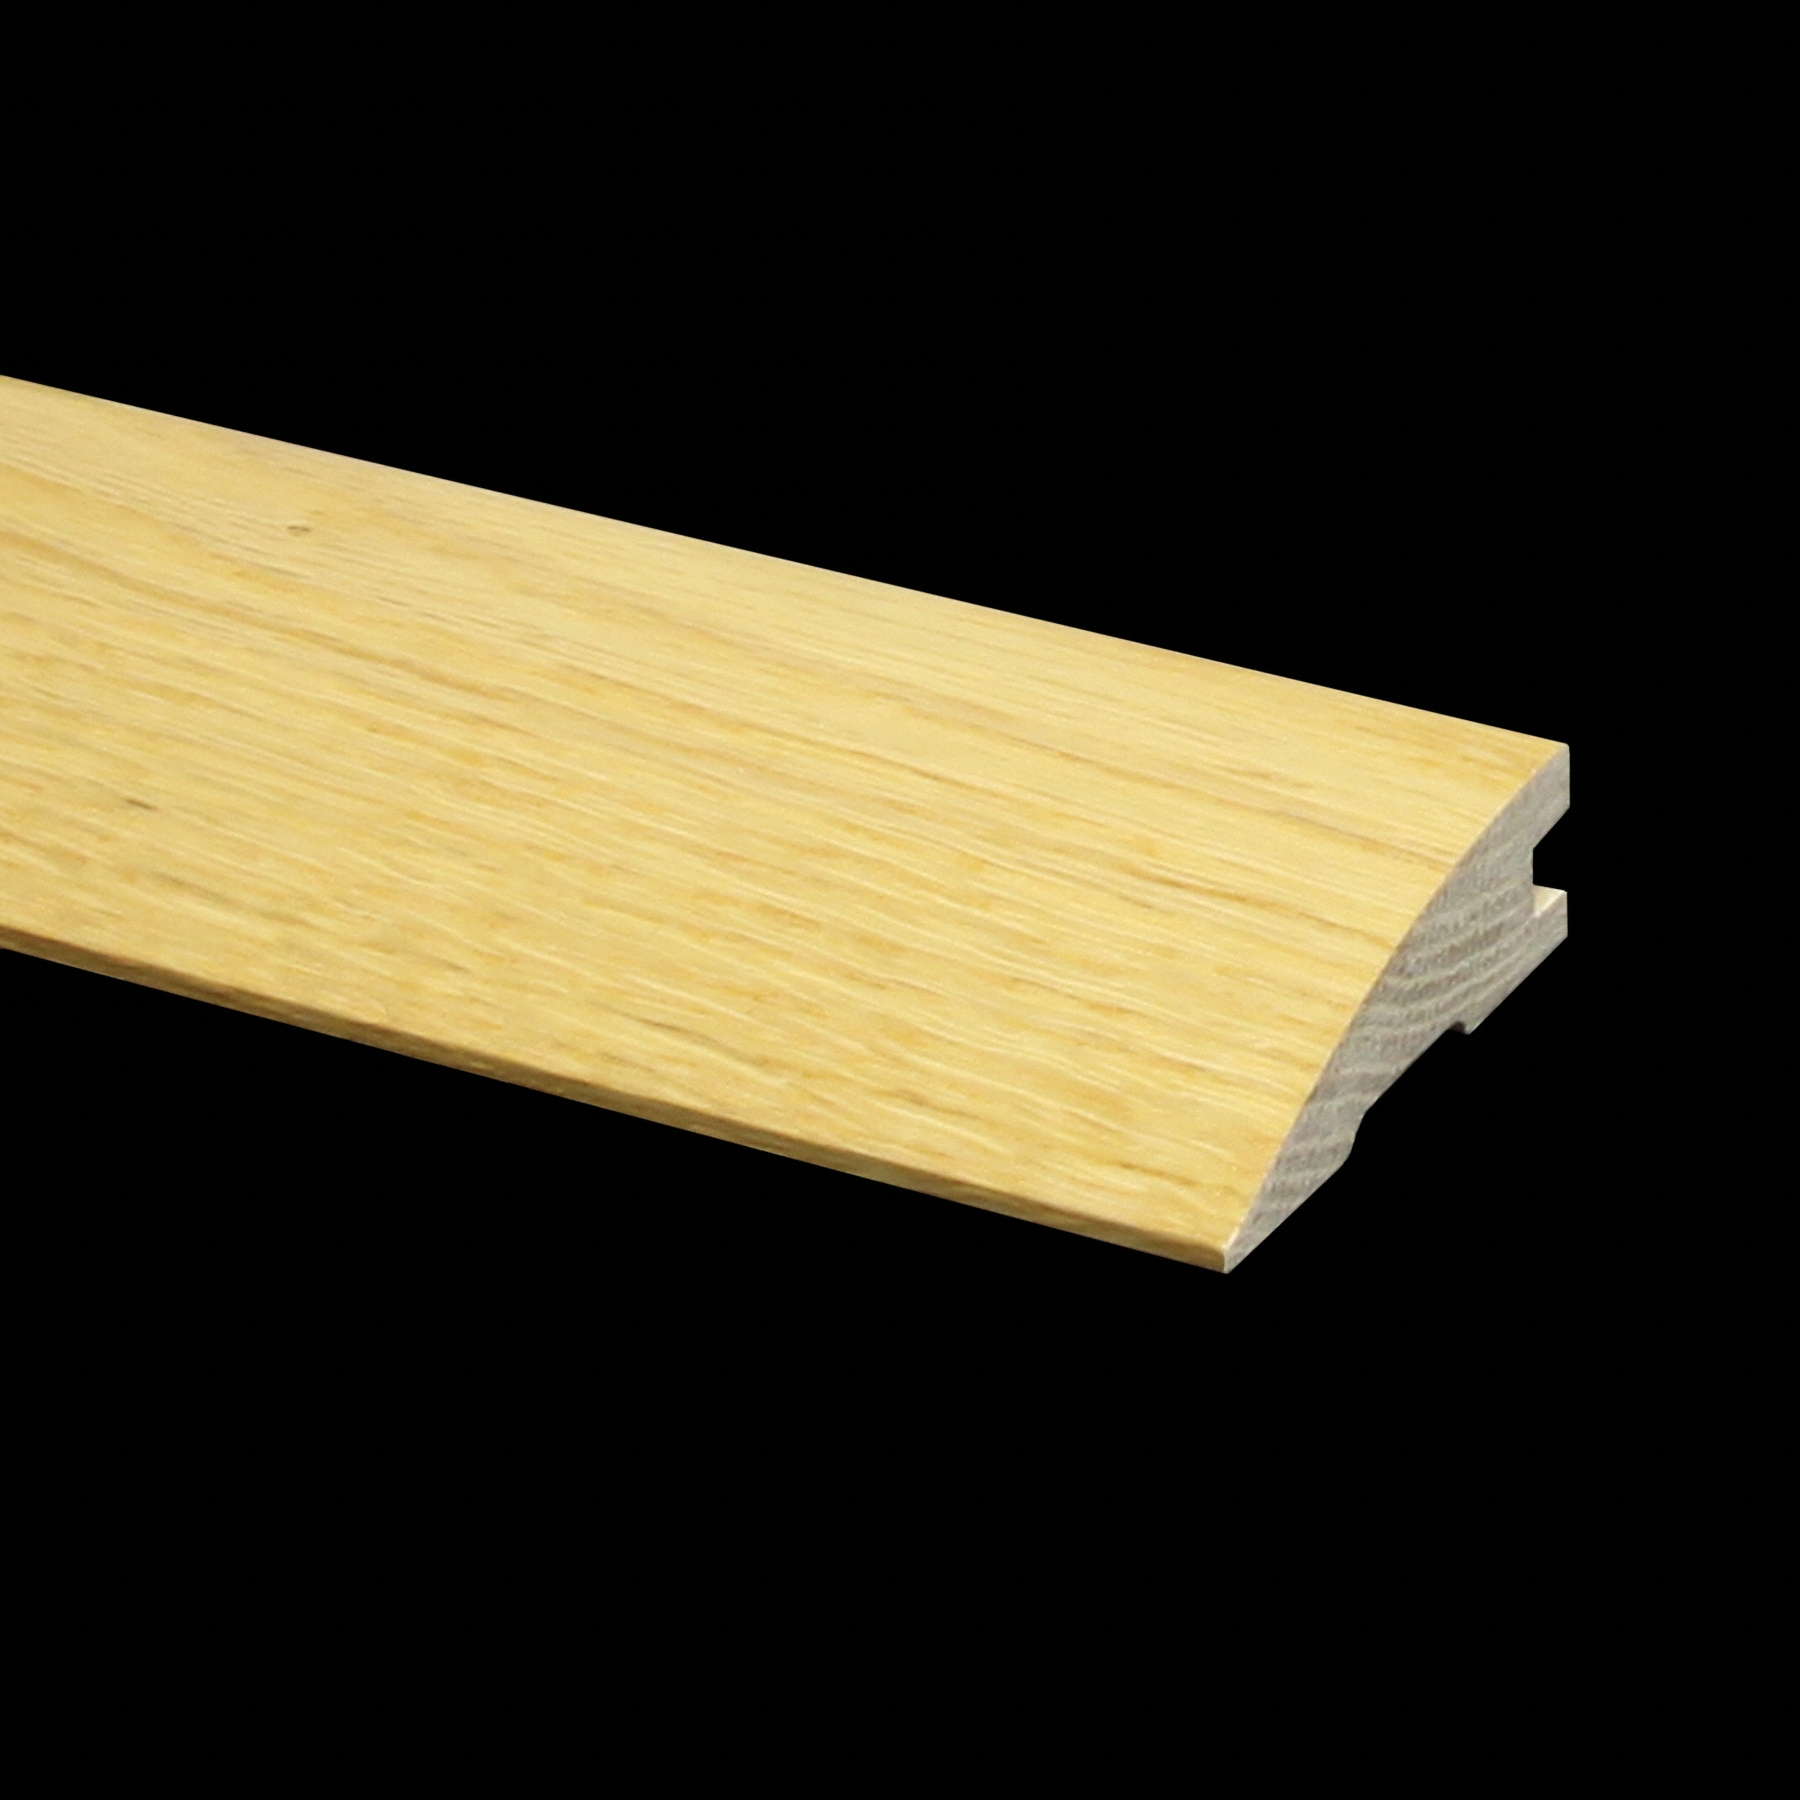 Moldings Online 78 x 1.5 x 0.54 Tarkett Gunstock Engineered Plank Red Oak Reducer Overlap 78 L